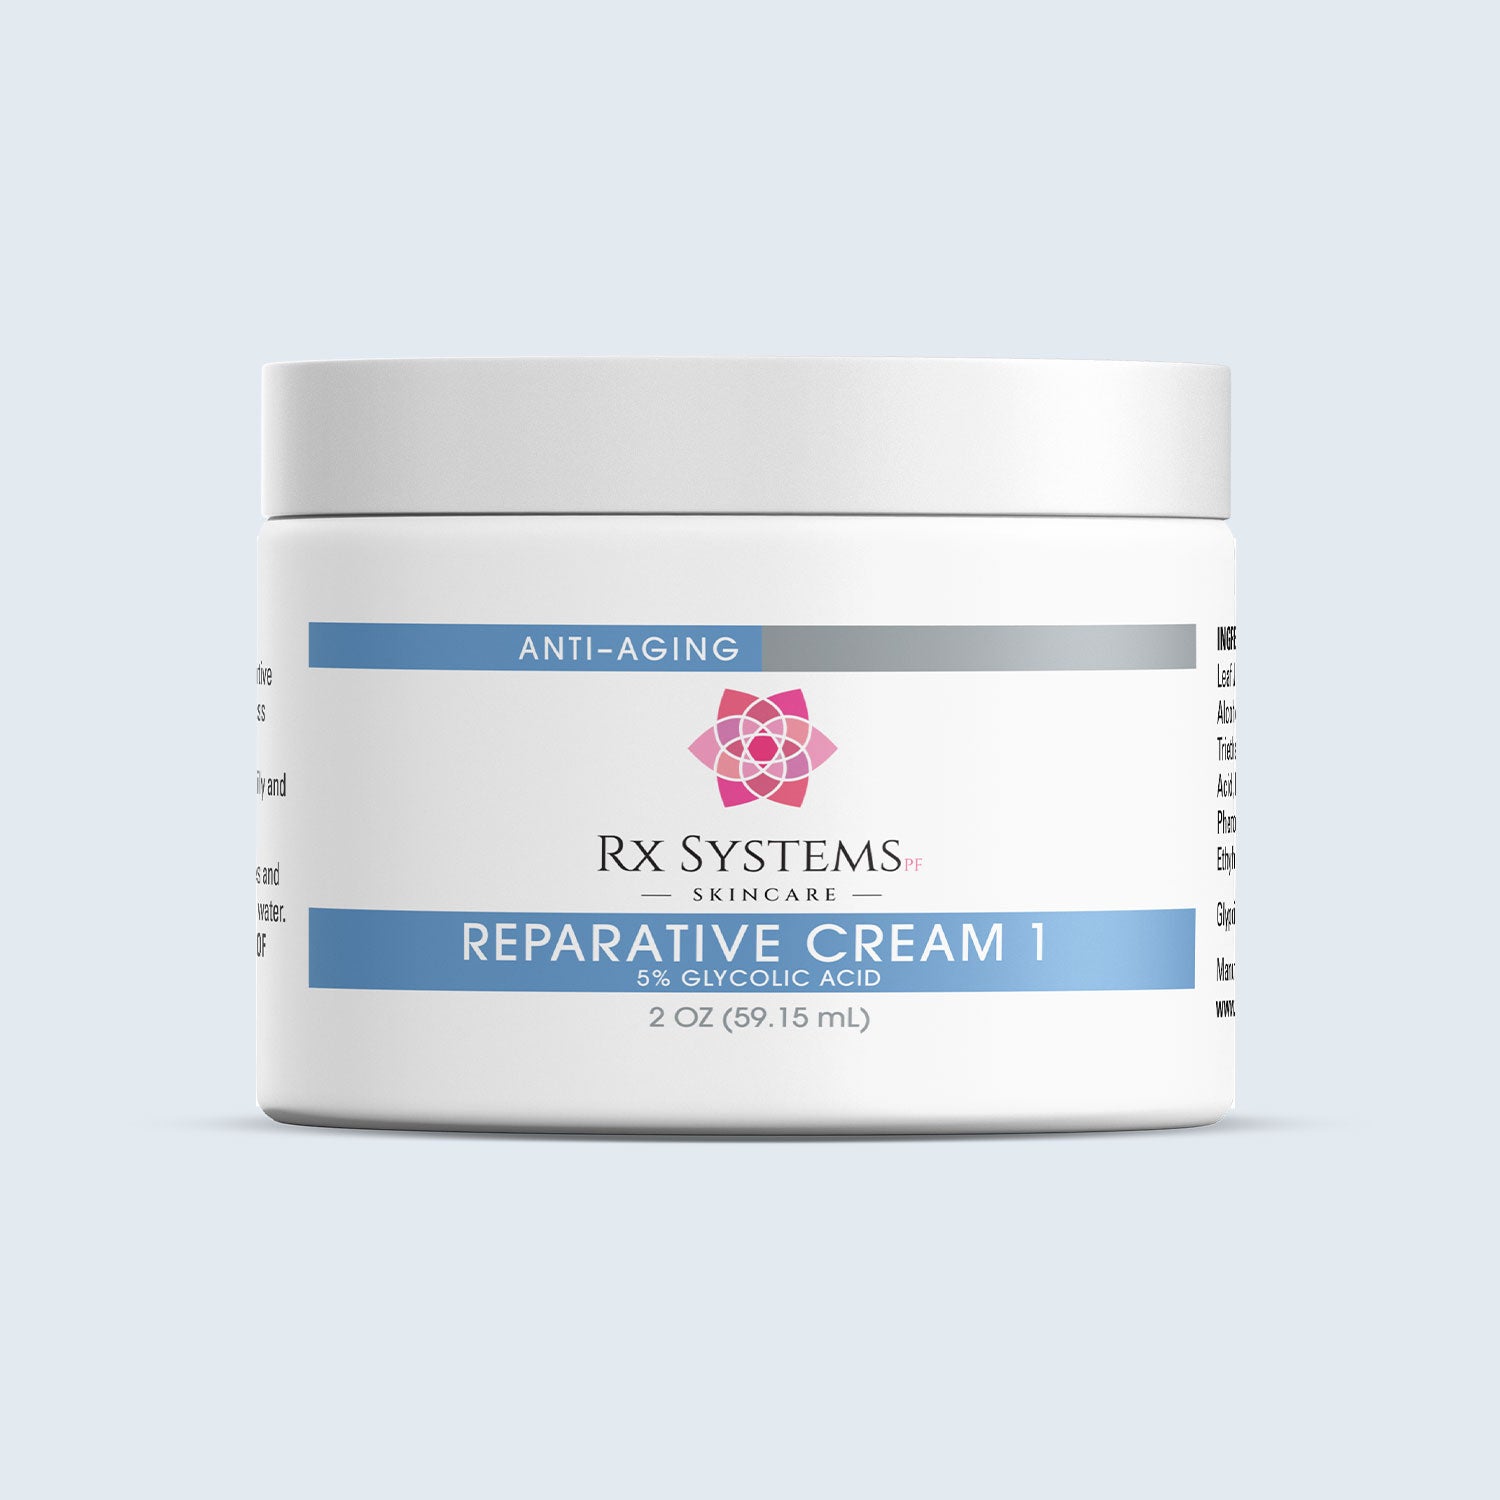 Reparative Cream 1